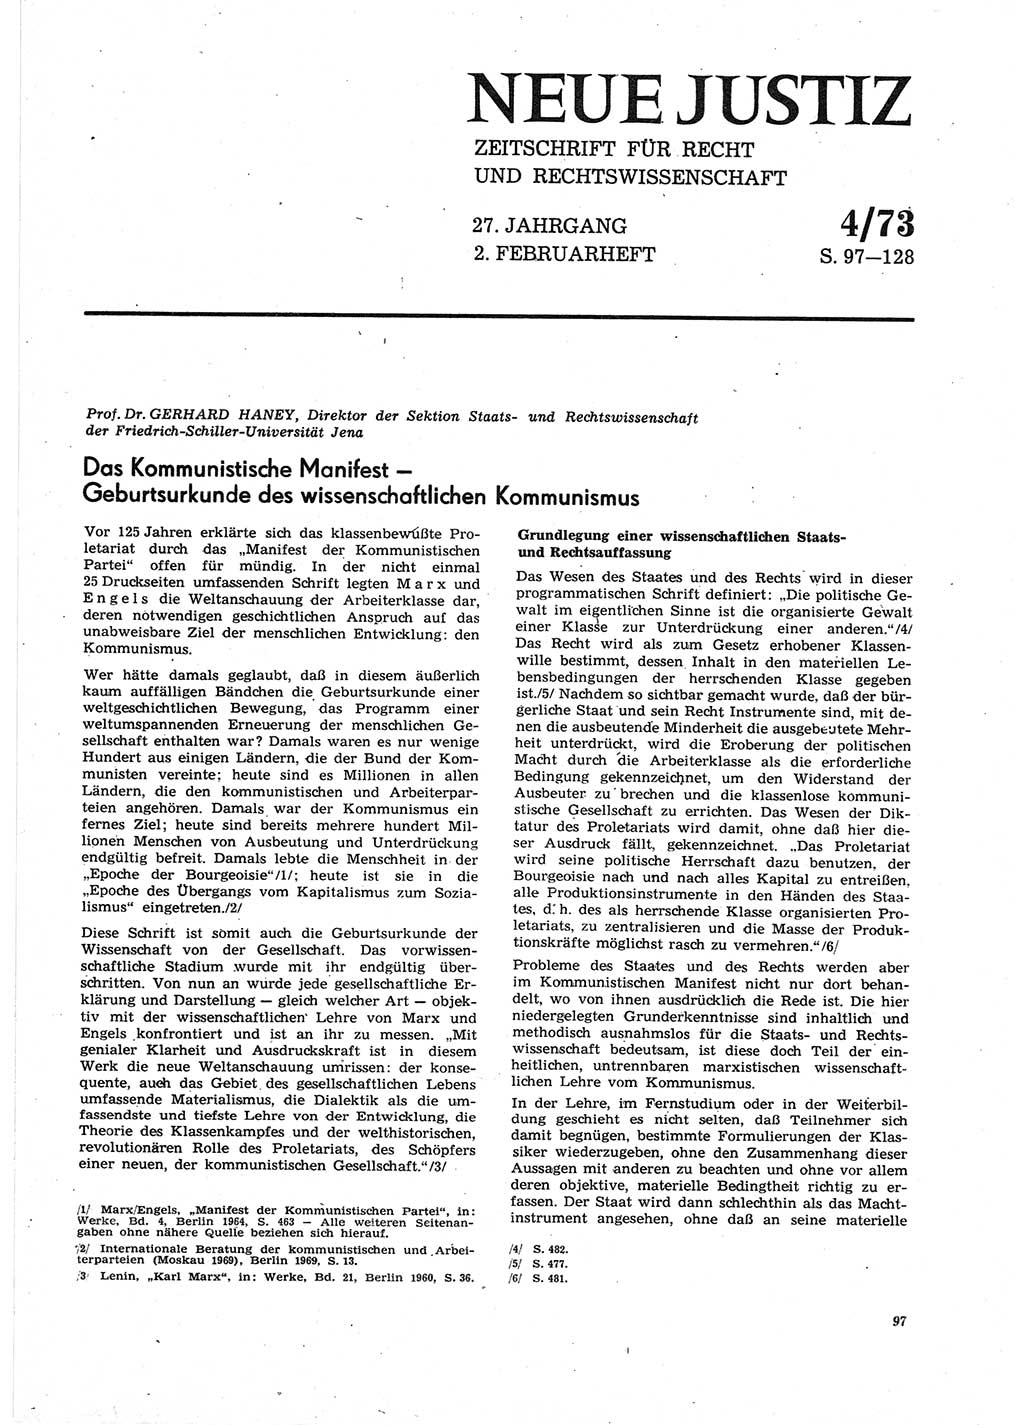 Neue Justiz (NJ), Zeitschrift für Recht und Rechtswissenschaft [Deutsche Demokratische Republik (DDR)], 27. Jahrgang 1973, Seite 97 (NJ DDR 1973, S. 97)